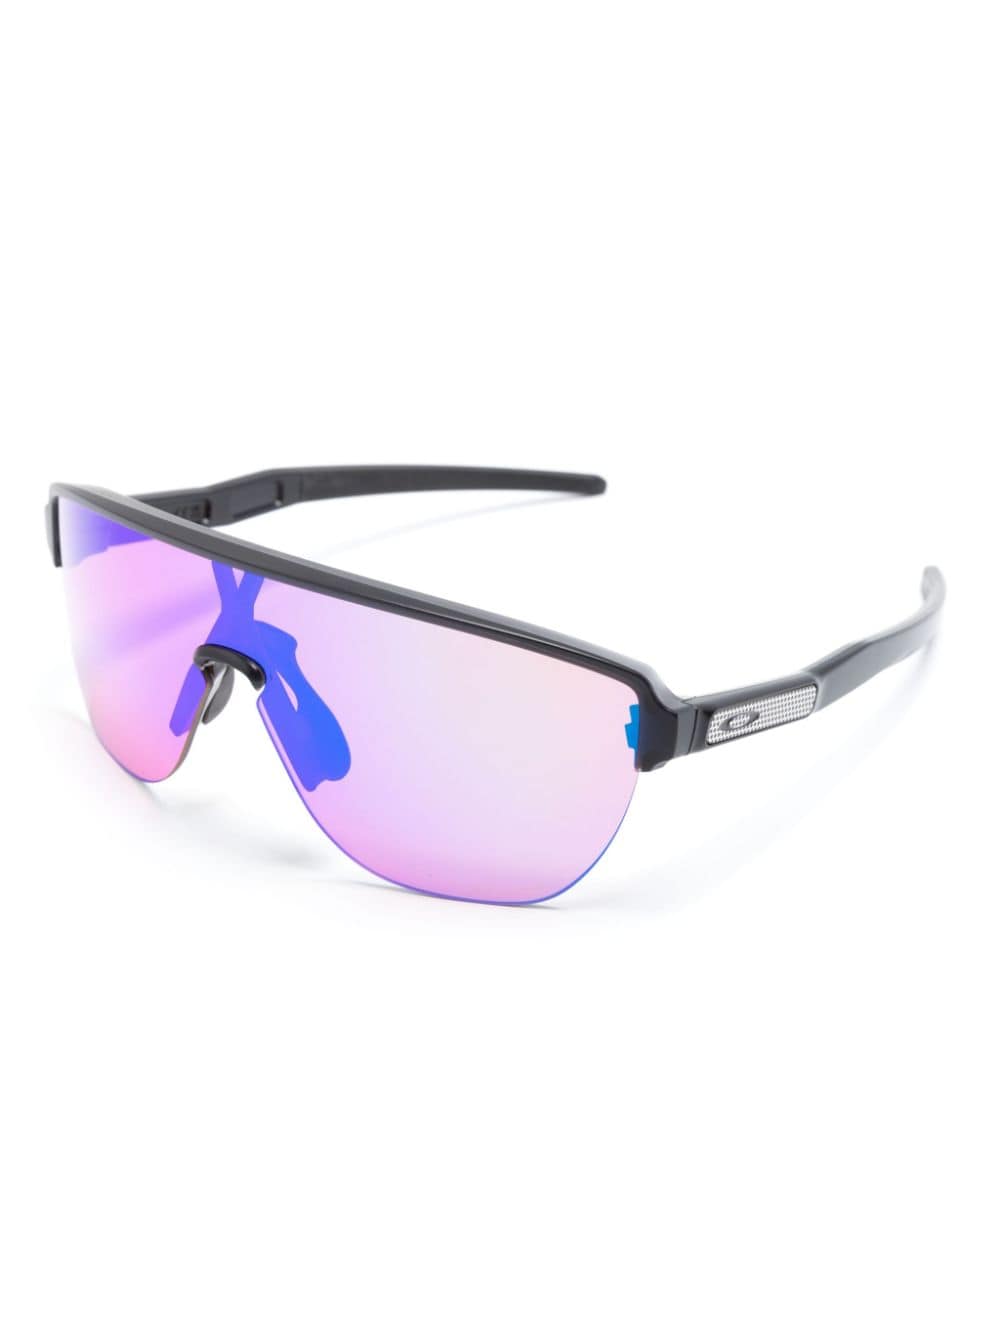 Oakley S3 zonnebril met schild montuur - Zwart